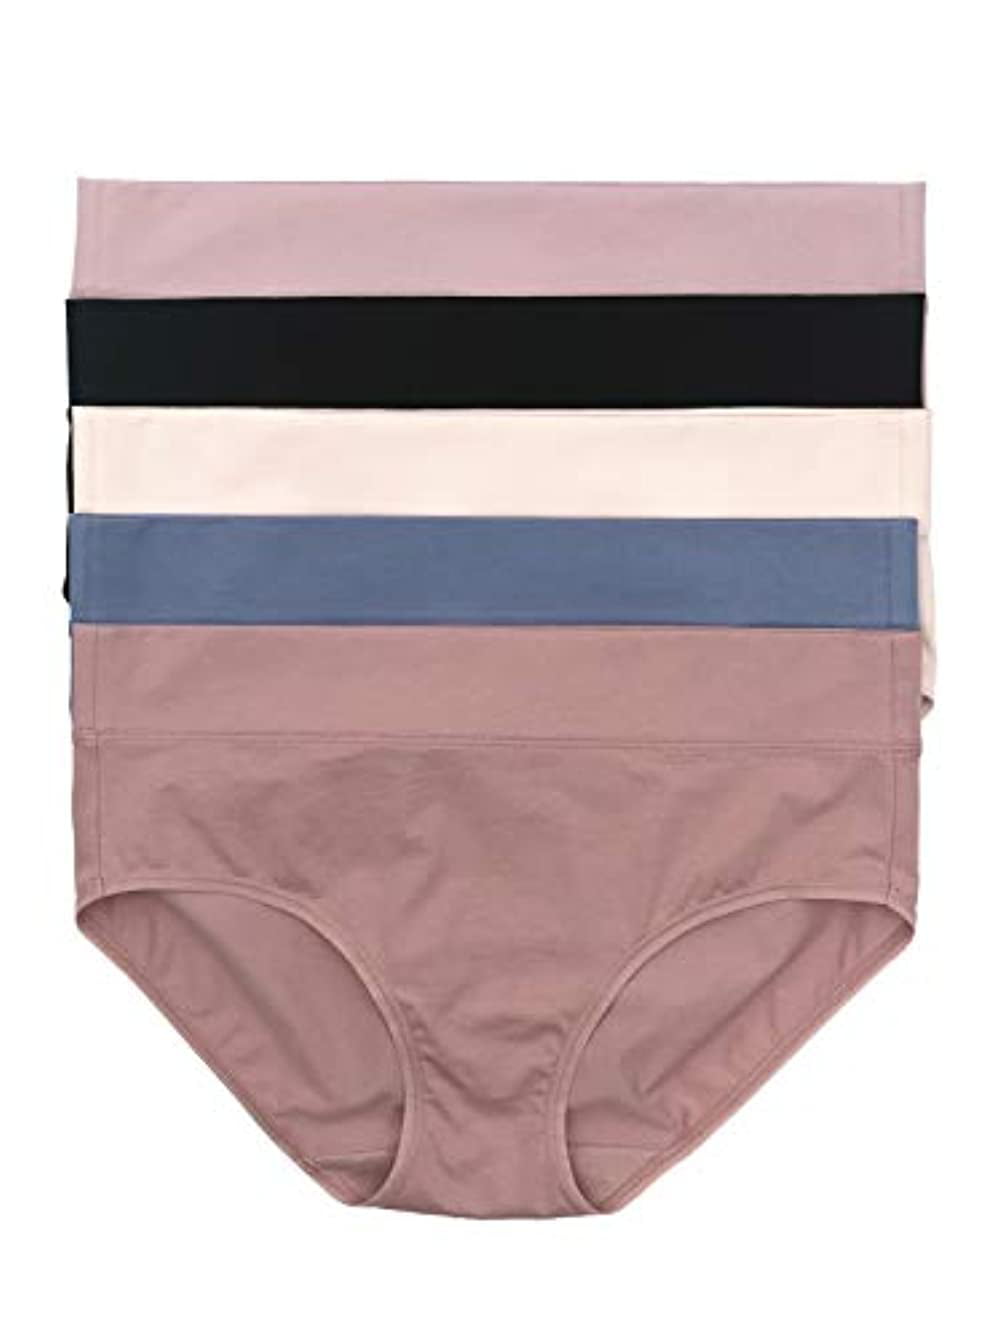 Felina Ladies Cotton Brief Underwear Panties 7 or 8 Pack S M L XL